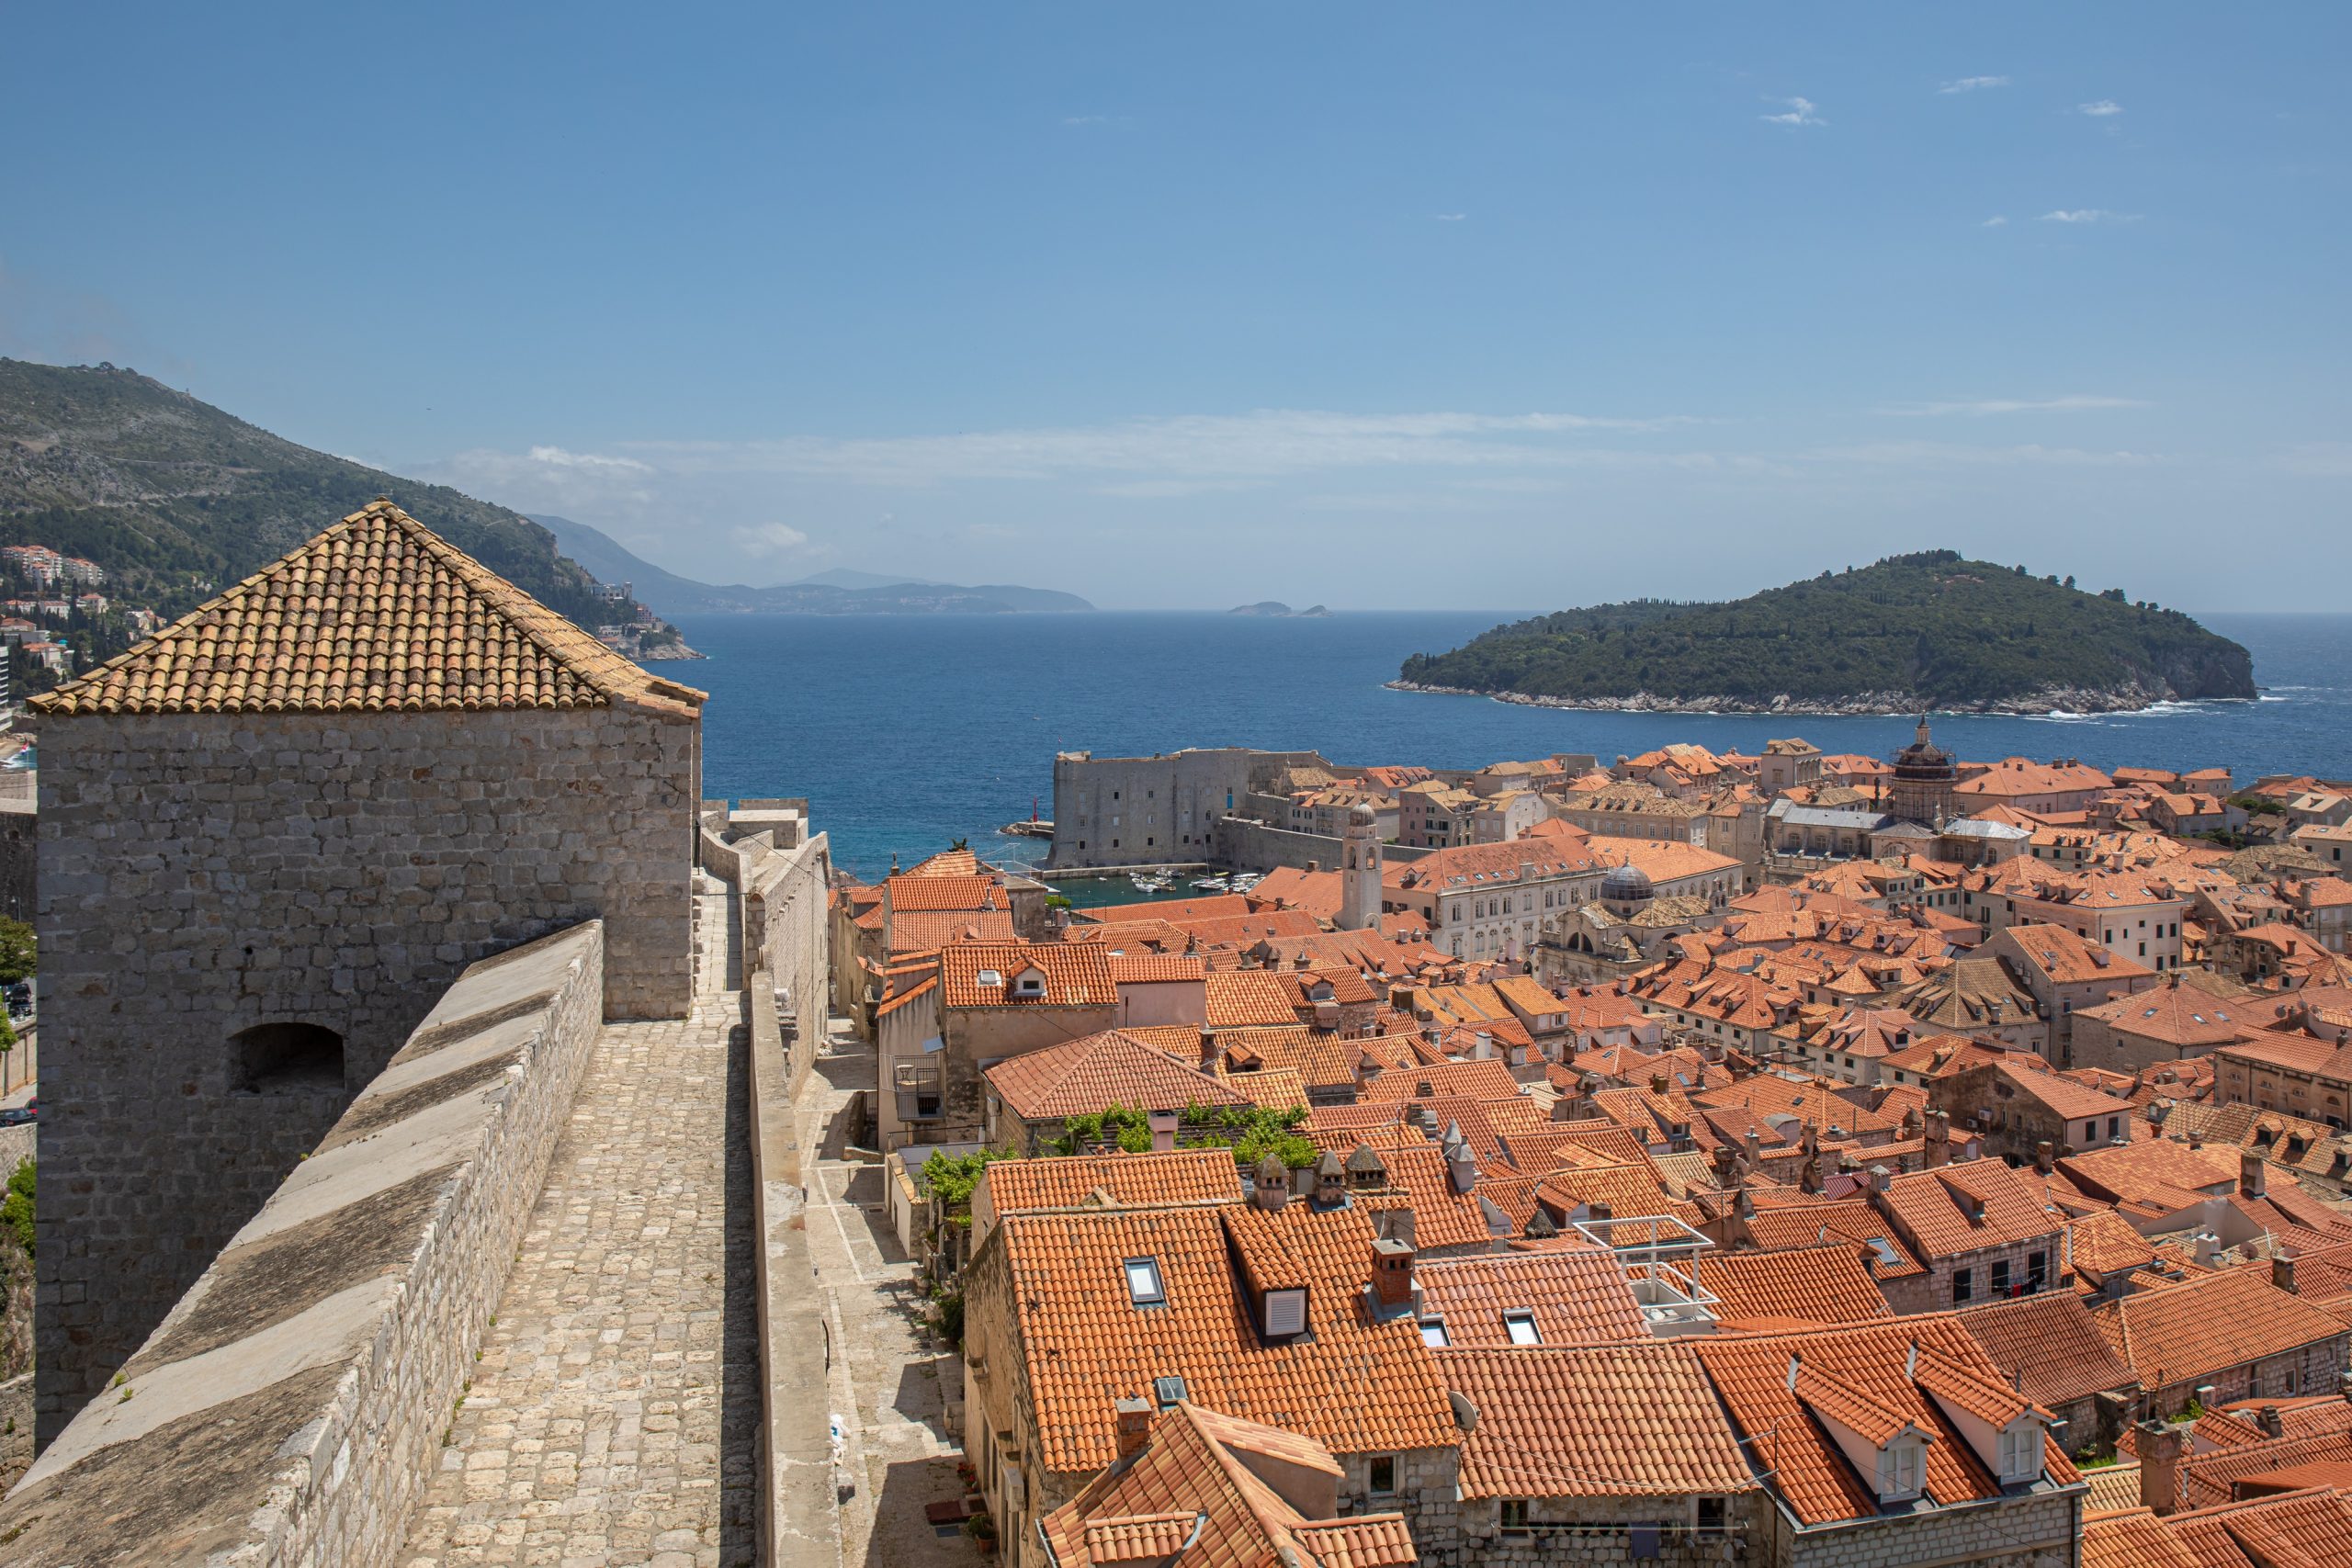 12.05.2020., Stara gradska jezgra, Dubrovnik - Dubrovacke zidine otvorene za posjetitelje. Kontroverzna je odluka DPDa o poskupljenju ulaznica na 200 kuna.
Photo: Grgo Jelavic/PIXSELL